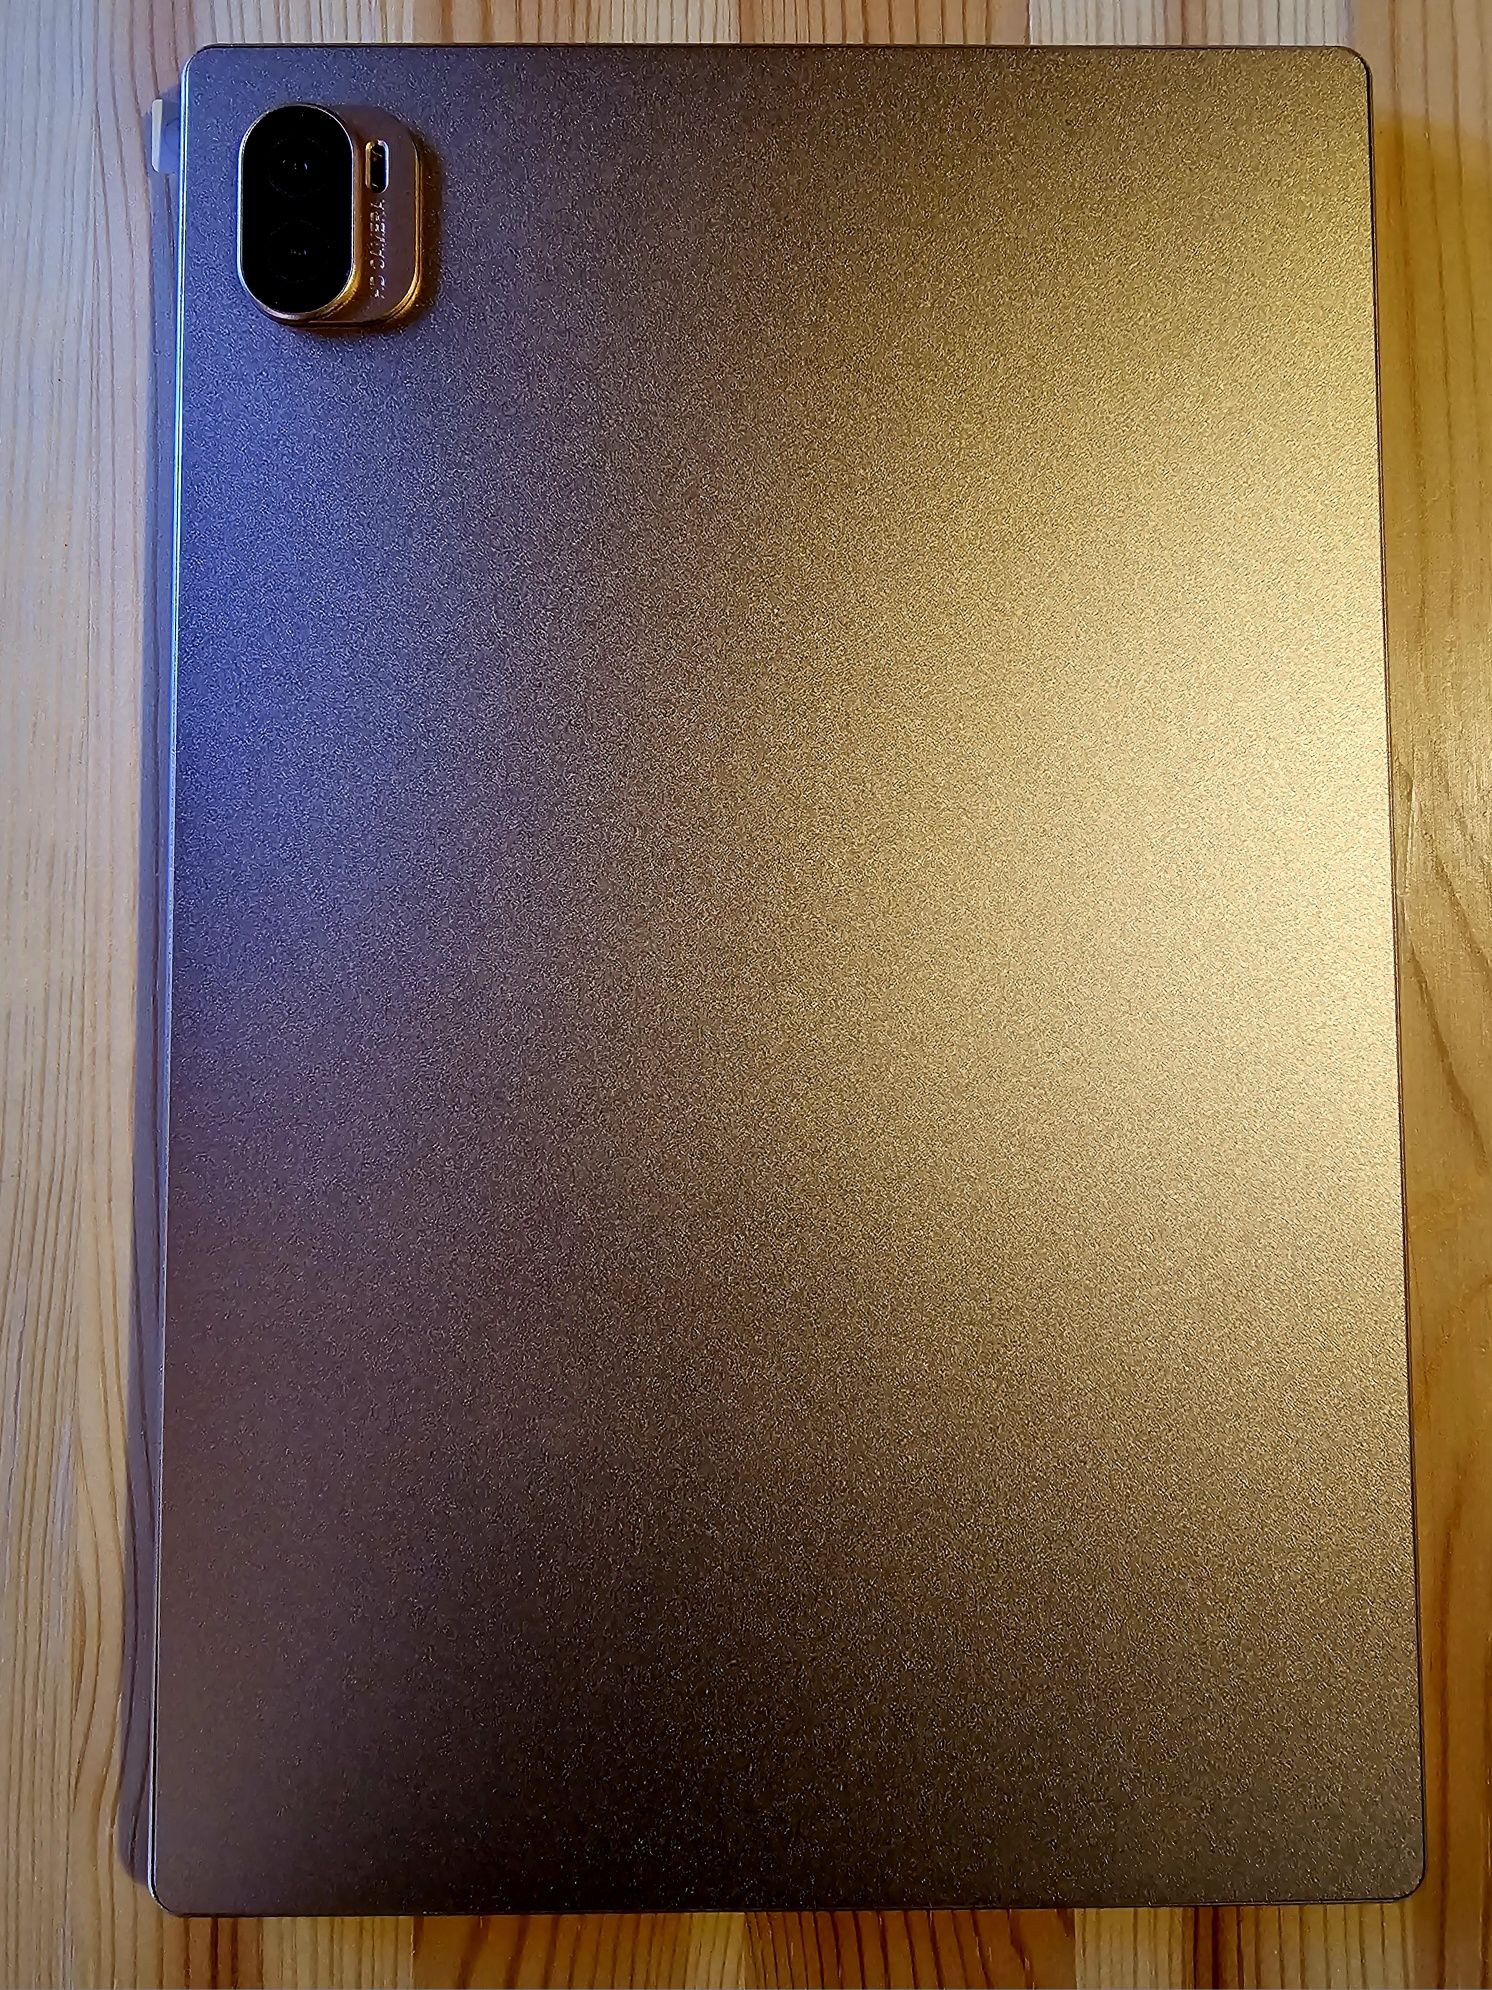 Tableta Pad 5 pro auriu, 8gb/256 gb, 10,1 inch ecran, 4g dual sim